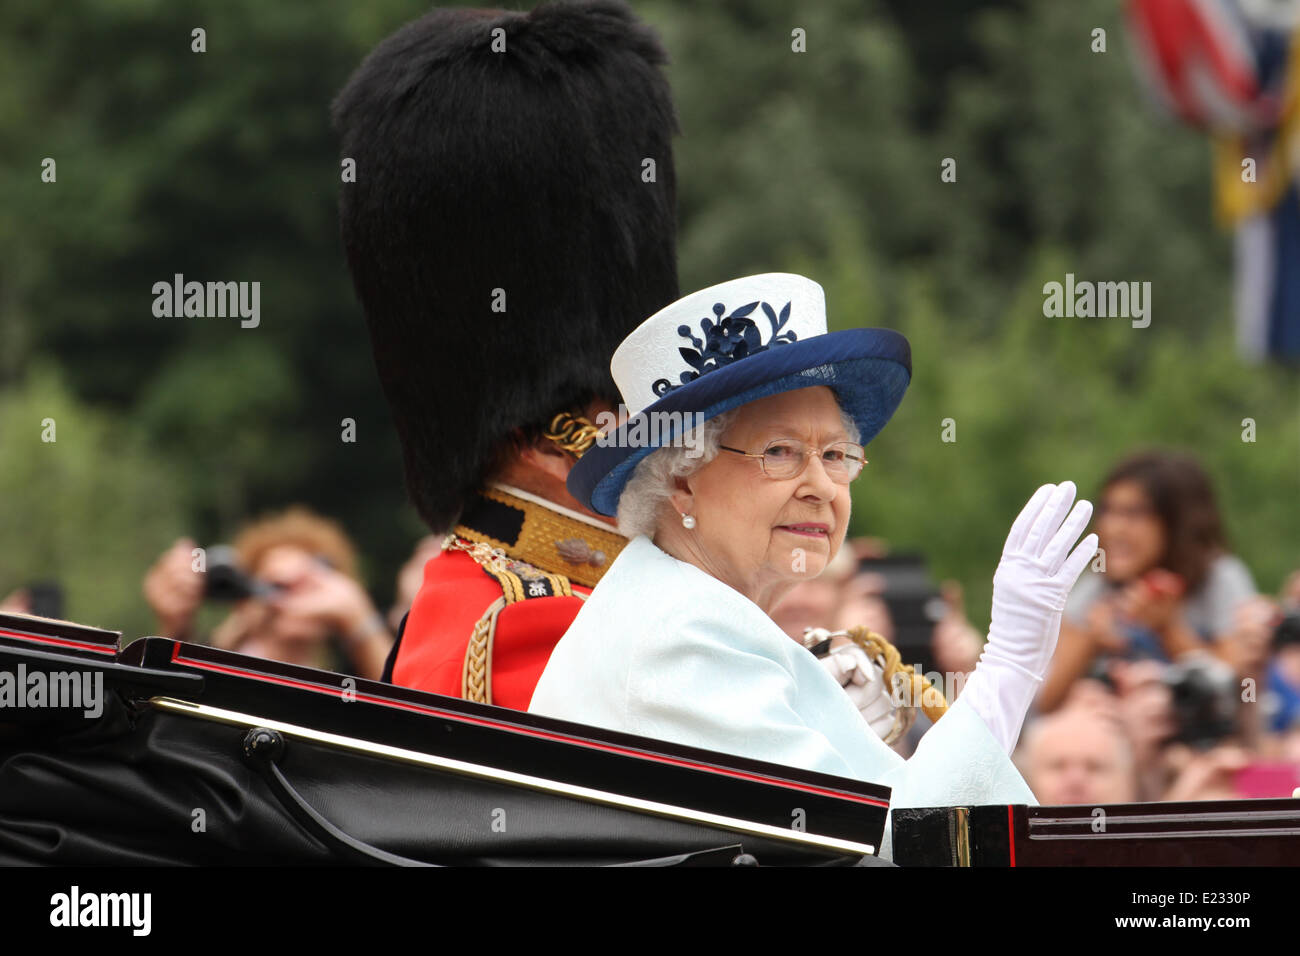 Londres, Reino Unido. El 14 de junio de 2014. Los miembros de la Familia Real visto en carros tirados por caballos Crédito: David mbiyu/Alamy Live News Foto de stock